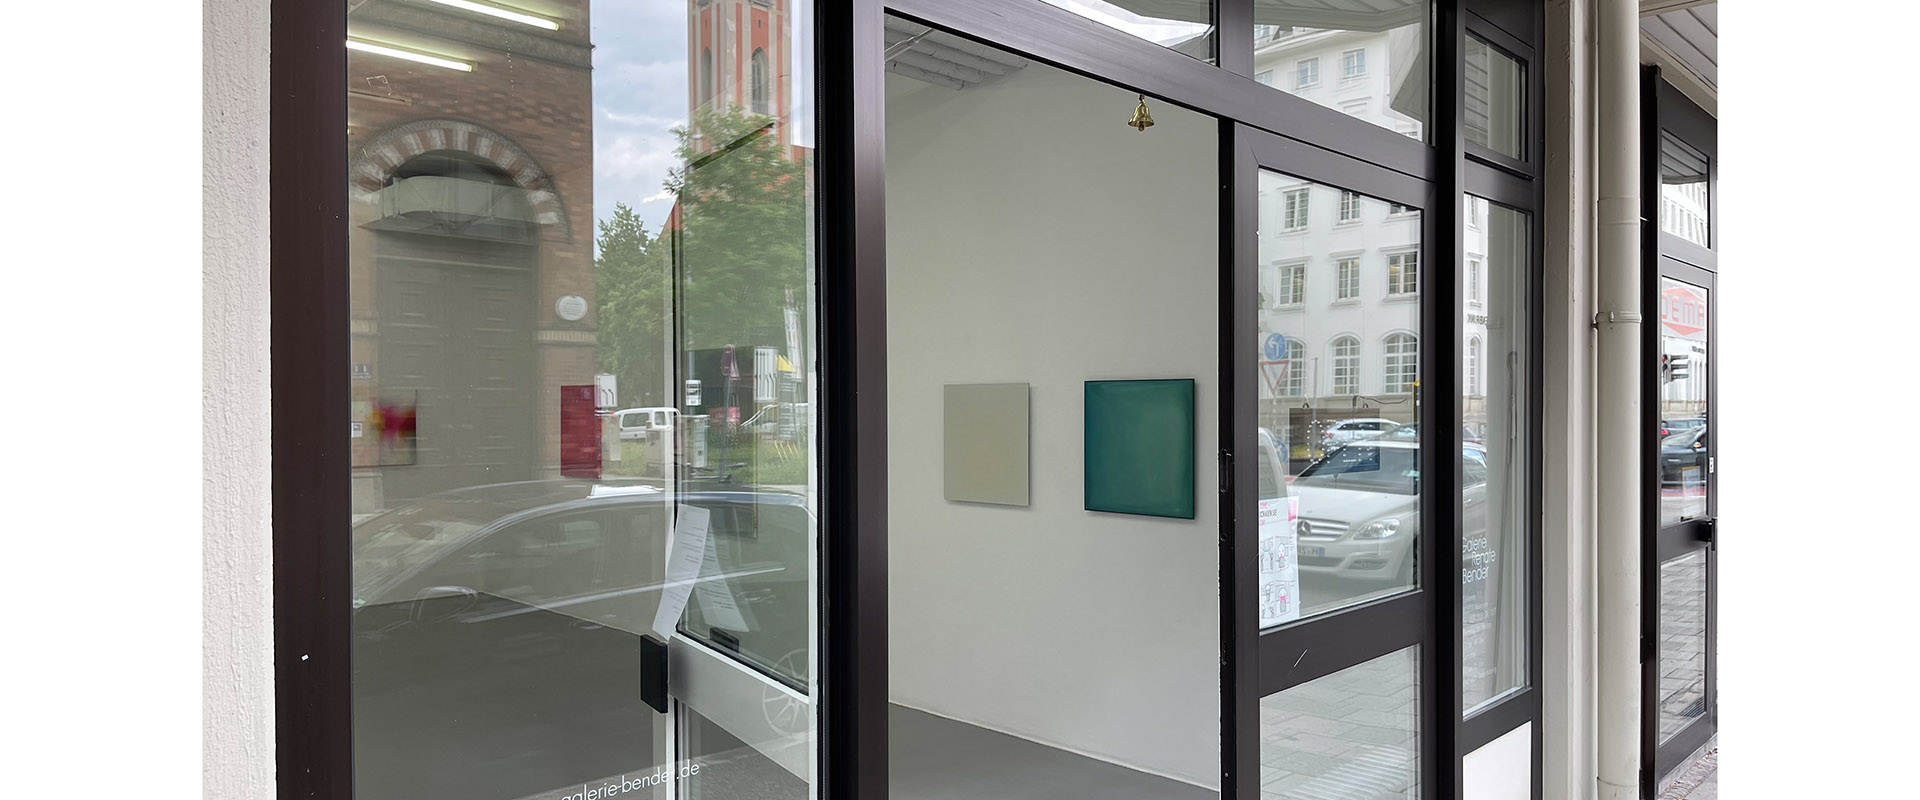 Ausstellungsansicht "Curated by... Heiner Thiel", Galerie Renate Bender 2021